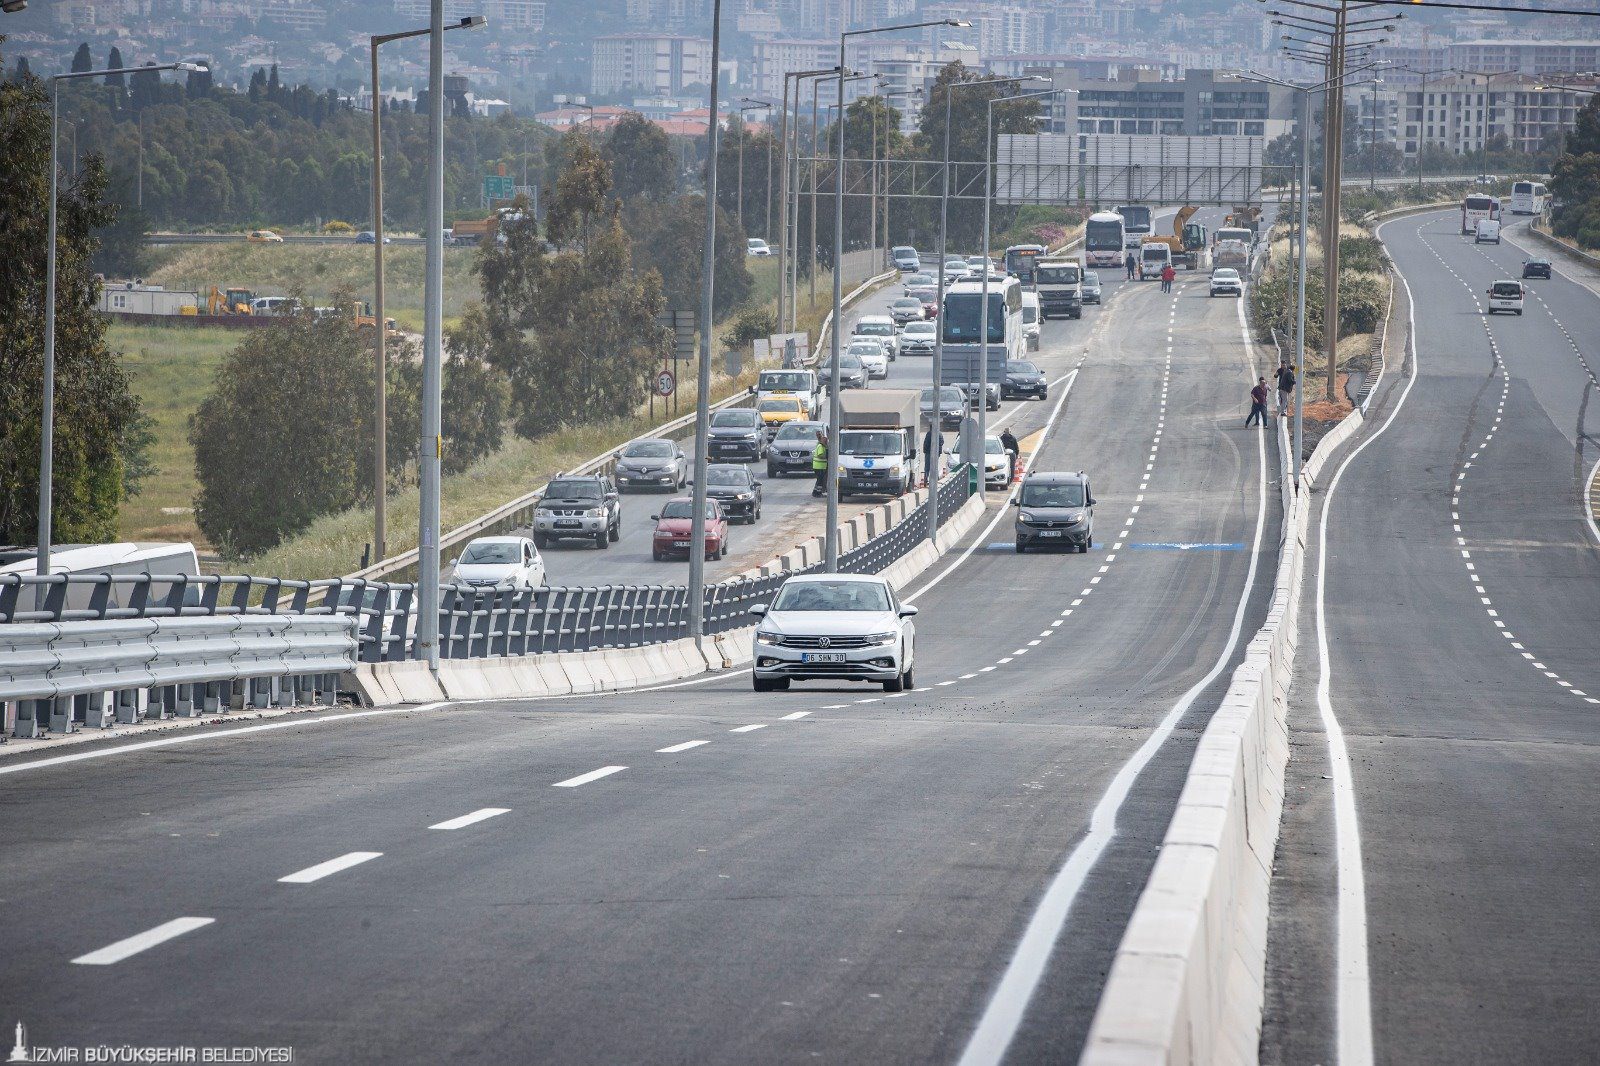 trafik <p>Buca ile Bornova’yı kesintisiz birbirine bağlayacak projenin 2,2 kilometrelik viyadük etabı hizmete açıldı. Bölgedeki trafiği rahatlatacak viyadükten aracıyla ilk geçen Başkan Tunç Soyer oldu. 2025’te tamamlanması planlanan projenin tünel etabında çalışmaların hızla ilerlediğini ifade eden Başkan Soyer, “Bugün İzmir için güzel bir gün, çünkü uzun zamandır çok ciddi bir yatırımla emek verdiğimiz projenin sonuna geldik. İzmir'e hayırlı olsun diyorum” dedi. İzmir Büyükşehir Belediyesi, Buca ile Bornova’yı birbirine kesintisiz bağlayacak “Buca Onat Caddesi ile Şehirlerarası Otobüs Terminali ve Çevre Yolu Arası Bağlantı Yolu” projesinin ikinci etabında devam eden Buca Onat Tüneli çalışmalarını hızla sürdürüyor.   Tünelin otogar üzerinden çevreyolu bağlantısını sağlayacak 2,2 kilometrelik viyadük etabı tamamlandı. İzmir Büyükşehir Belediye Başkanı Tunç Soyer ve İzmir Büyükşehir Belediyesi Genel Sekreter Yardımcısı Özgür Ozan Yılmaz'ın ilk sürüşüyle viyadükler hizmete açıldı. Viyadük ve alt geçitlerin hizmete girmesiyle Bornova ve terminal önündeki araç trafiği rahatlayacak.</p>
<p>Soyer: “Bugün İzmir için güzel bir gün”
İzmir Büyükşehir Belediye Başkanı Tunç Soyer, “Bugün İzmir için güzel bir gün, çünkü uzun zamandır çok ciddi bir yatırımla emek verdiğimiz projenin sonuna geldik. Viyadükleri açıyoruz. Buca Onat Tüneli tamamlandığında Buca Bornova arasındaki trafiği önemli ölçüde rahatlatacak. 170 milyon liralık bir yatırım gerçekleştirildi viyadüklerde. Bugünün rakamlarıyla yapılmaya kalkılsaydı, 500 milyon lirayı bulacak bir yatırım. Rakamsal büyüklüğü bir yana getirdiği çözüm bizim için çok daha önemli. O nedenle bütün arkadaşlarıma teşekkür ediyorum. İzmir'e hayırlı olsun diyorum. Tüneli de açtığımız zaman mükemmel bir çözümü İzmir için getirmiş olacağız” dedi.</p>
<p>45 dakikalık yol 10 dakikaya inecek
Konak Tüneli’nden başlayan ve otogar viyadüklerinde son bulan transit yolun en önemli etaplarından 7,1 kilometrelik Buca Onat Tüneli çalışmaları hızla sürüyor. 1 milyar 400 milyon liralık yatırımla devam eden tünel inşaatı tamamlandığında Konak ile Bornova arası 10 dakikaya inecek ve kent trafiği büyük ölçüde rahatlayacak. Tünel ve bağlantı yollarını kapsayan diğer çalışmaların da 2025’in ilk yarısında tamamlanıp İzmirlilerin hizmetine açılması planlanıyor.
Çalışmalar kapsamında iki tüpü birbirine bağlayan üç adet acil giriş noktası bulunuyor. Buca yönünde 650’inci metresindeki ilk geçiş tamamlandı. Projeyle havaalanından gelen bir yurttaş şehir trafiğine girmeden bu transit yolu kullanarak şehrin kuzey kesimlerine hızlı bir şekilde ulaşabilecek. Kuzey bölgesinden gelen yolcularsa otogar tarafından gelerek havaalanı, Çeşme gibi ilçelere ulaşım sağlayabilecek. Böylelikle 45 dakika olan seyahat süresi 10 dakikaya inecek.</p>